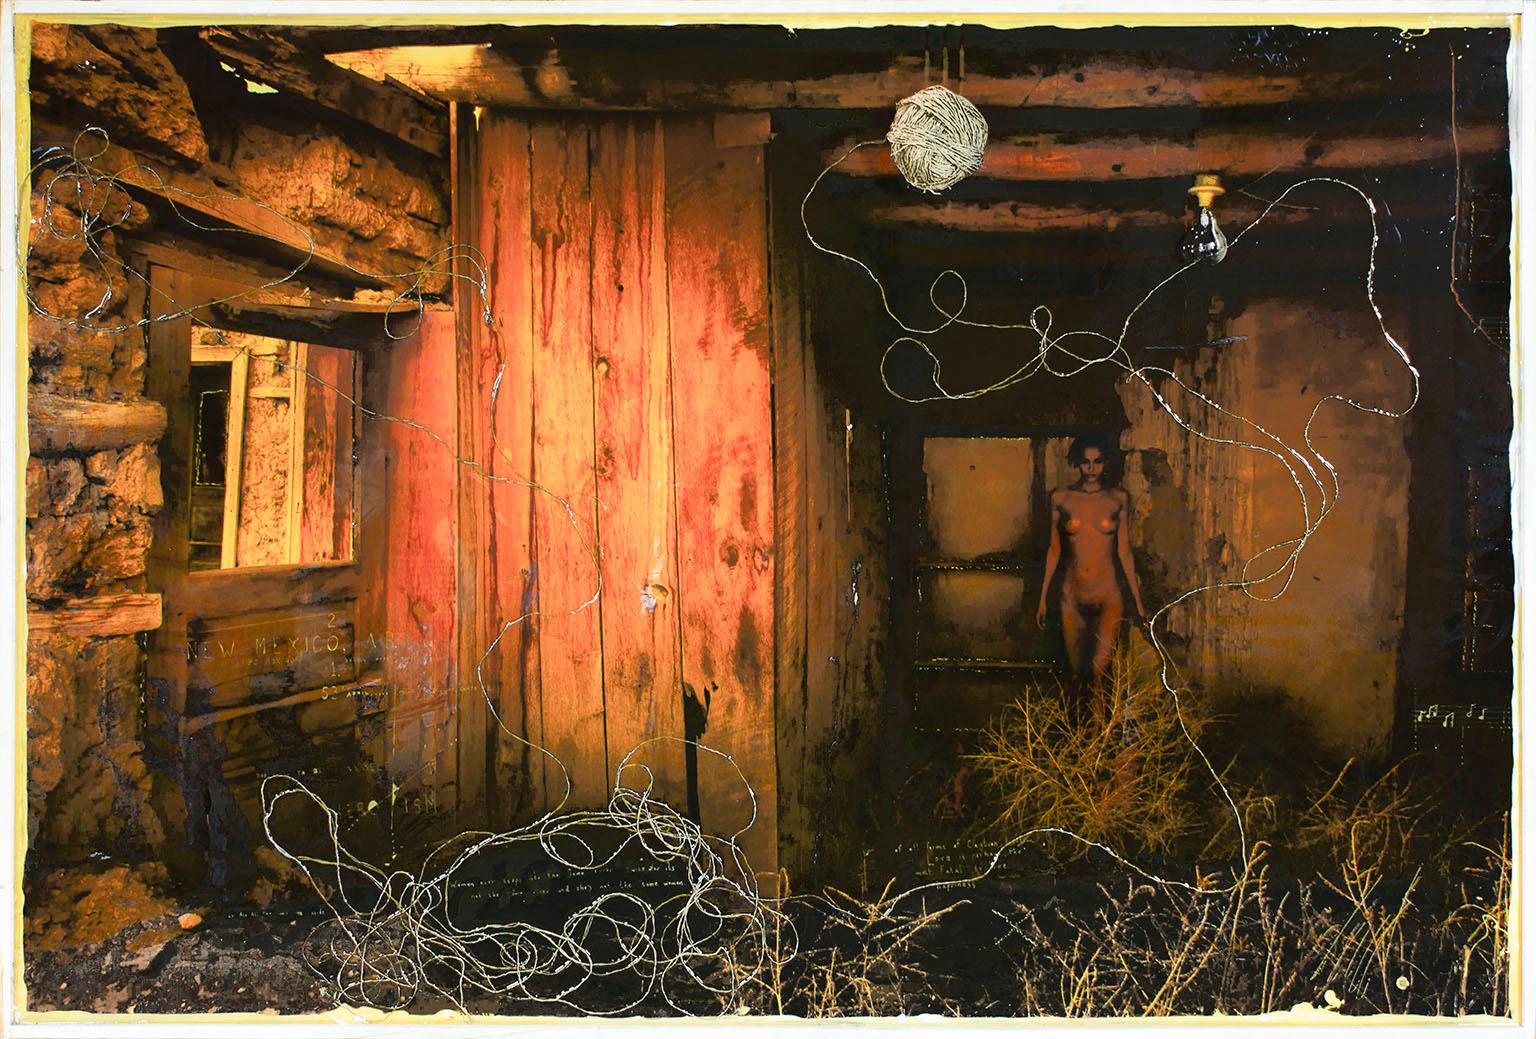 Mazzucco : impression d'archives « Enclosed », peinture à l'huile et techniques mixtes enchâssées dans de la résine  - Mixed Media Art de Raphael Mazzucco